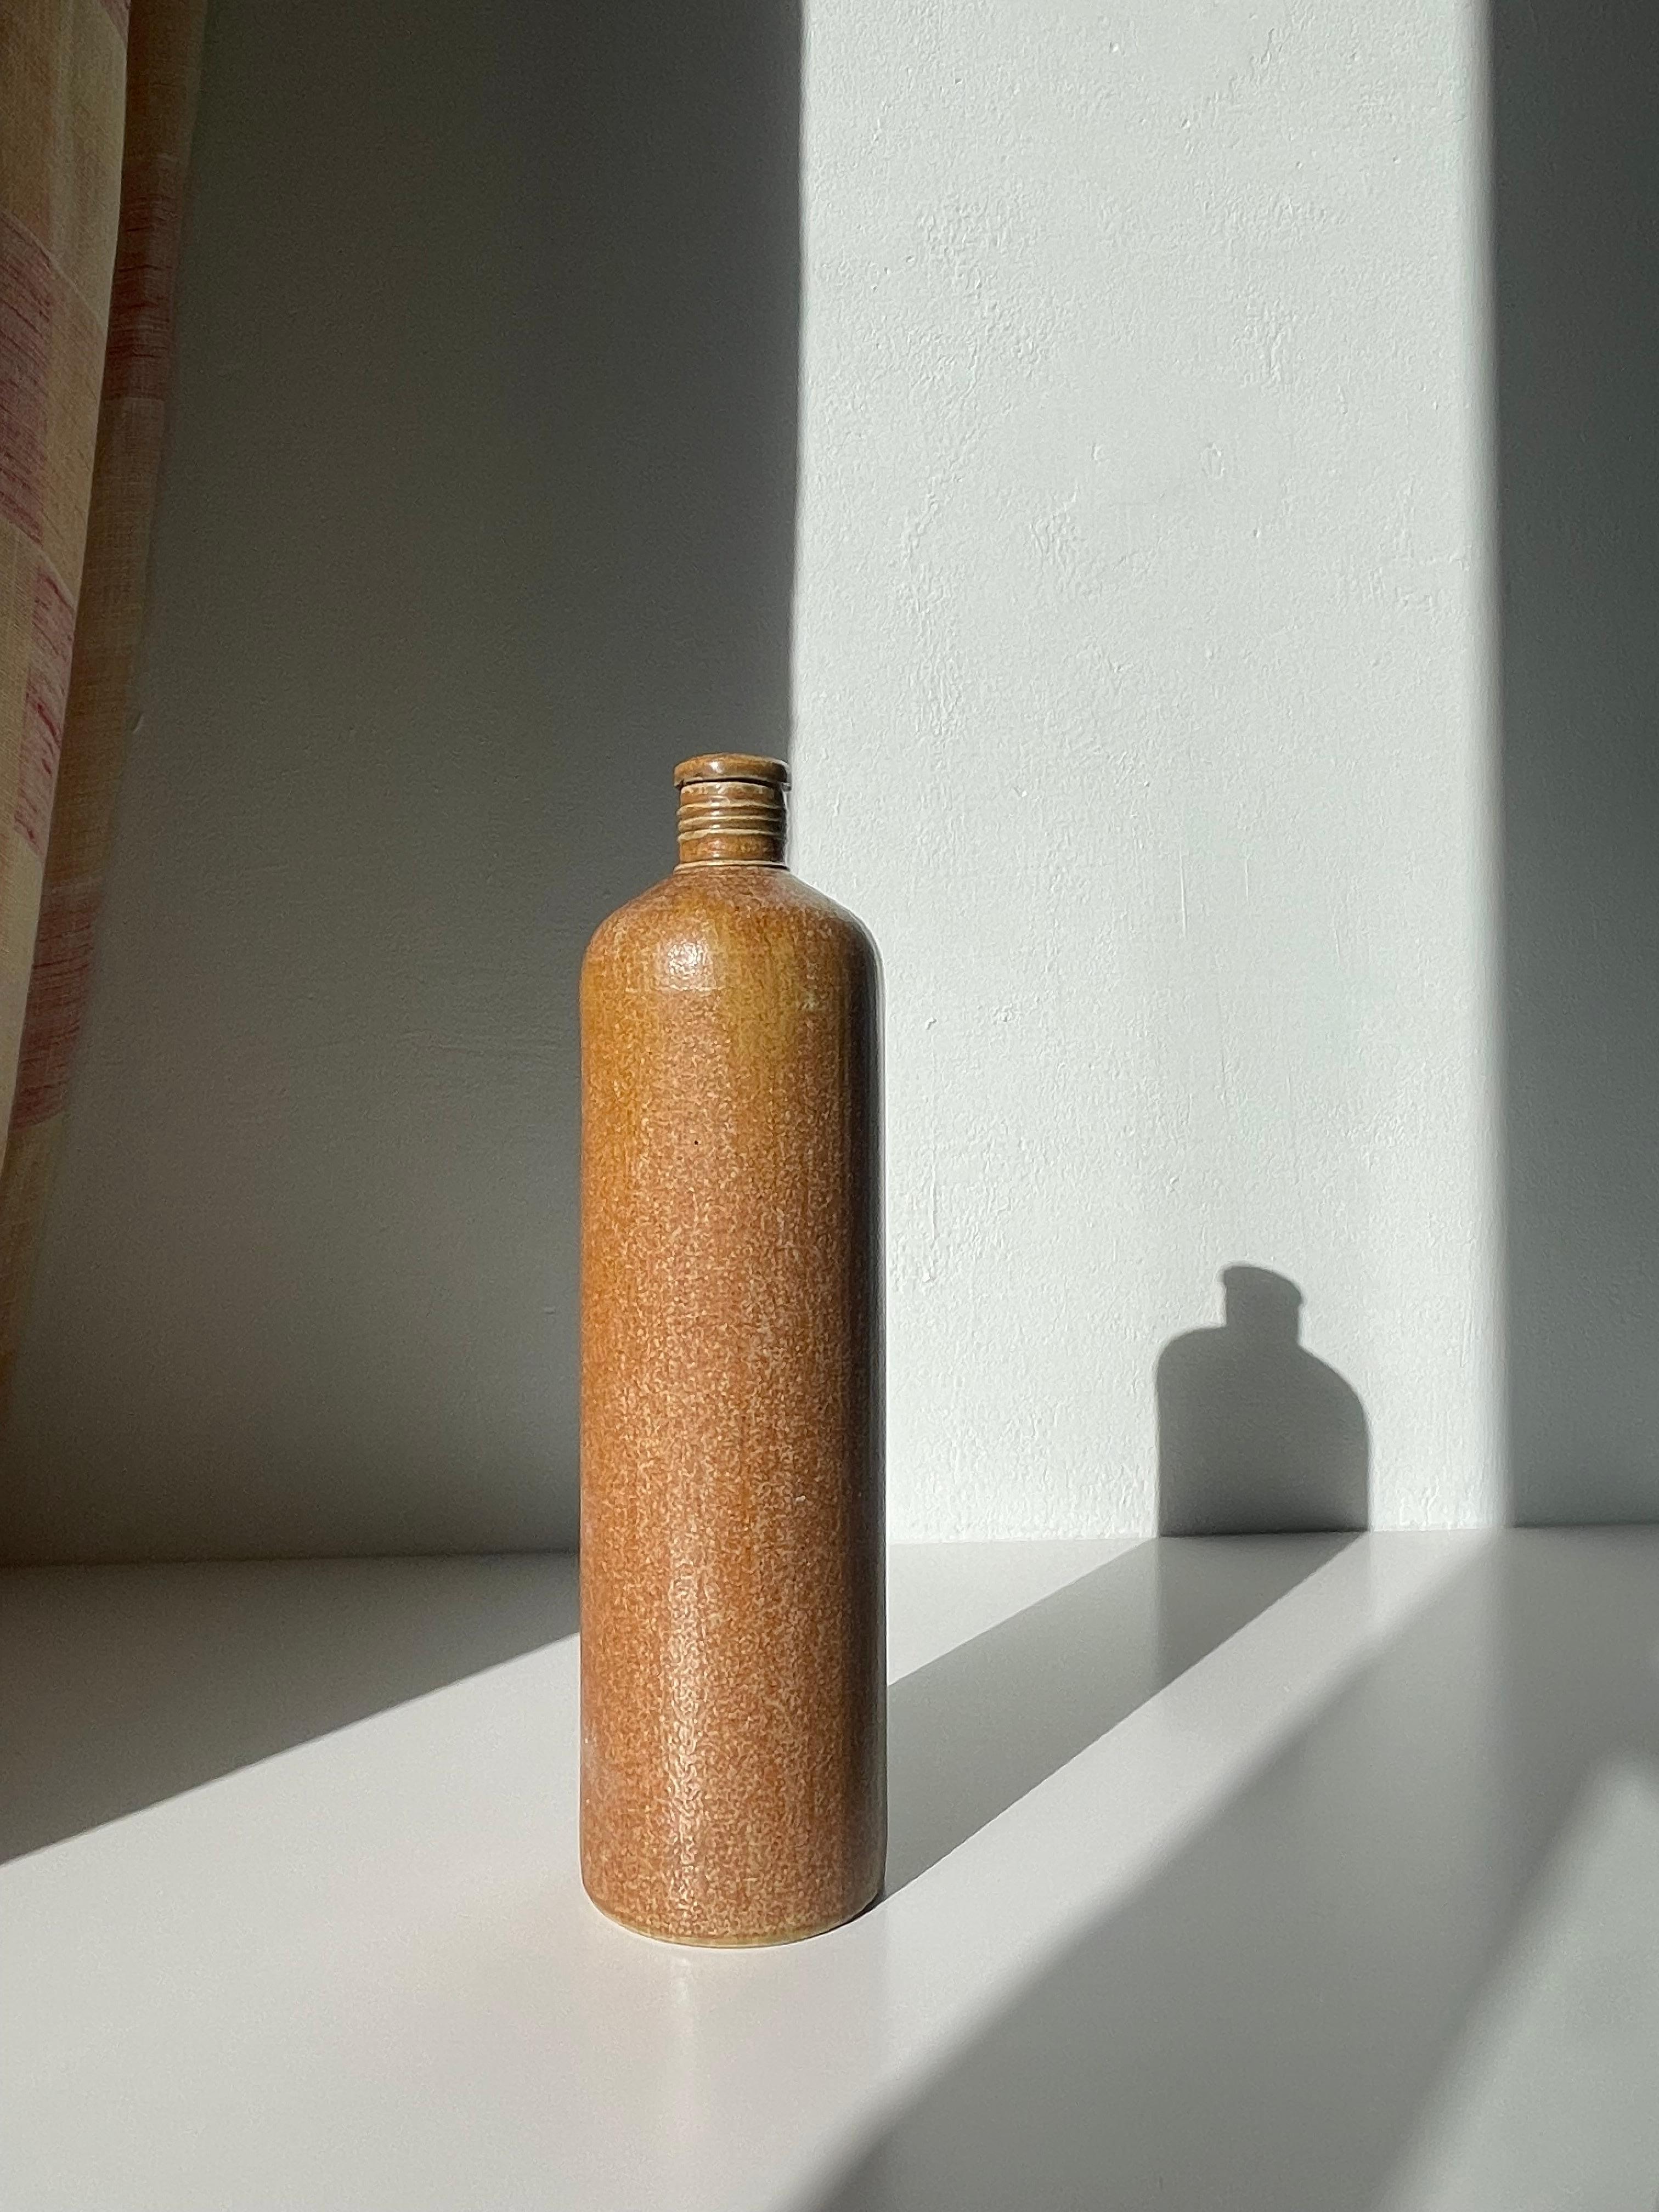 Antike Wasserflasche aus Steinzeug, hergestellt von der deutschen Firma MKM in den 1930er Jahren. Hohe Zylinderform mit schmalem Hals - perfektes Dekorationsobjekt oder Vase für ein paar Zweige. Warme karamellfarbene Salzglasur. Schöner